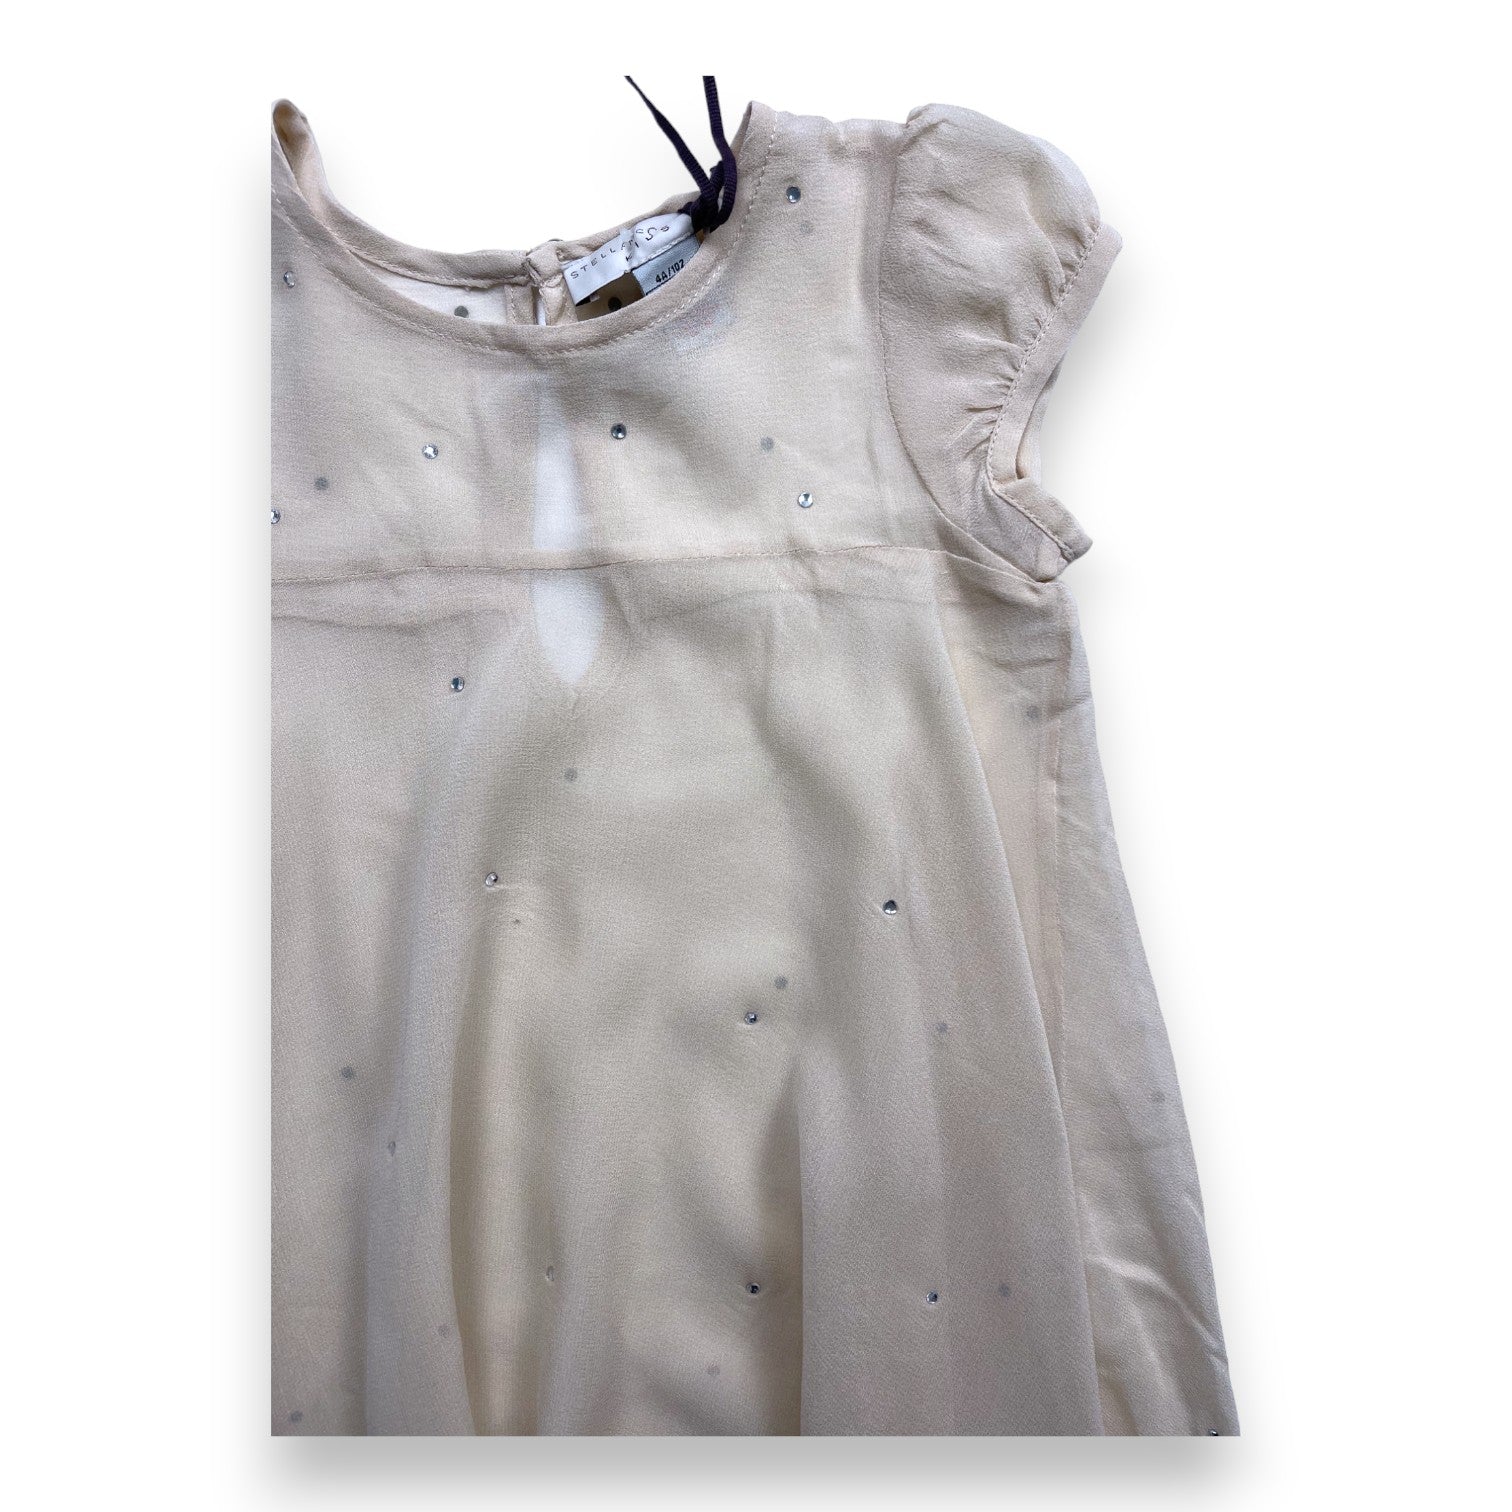 STELLA MCCARTNEY - Robe transparente en soie rose poudré à strass (neuve) - 4 ans